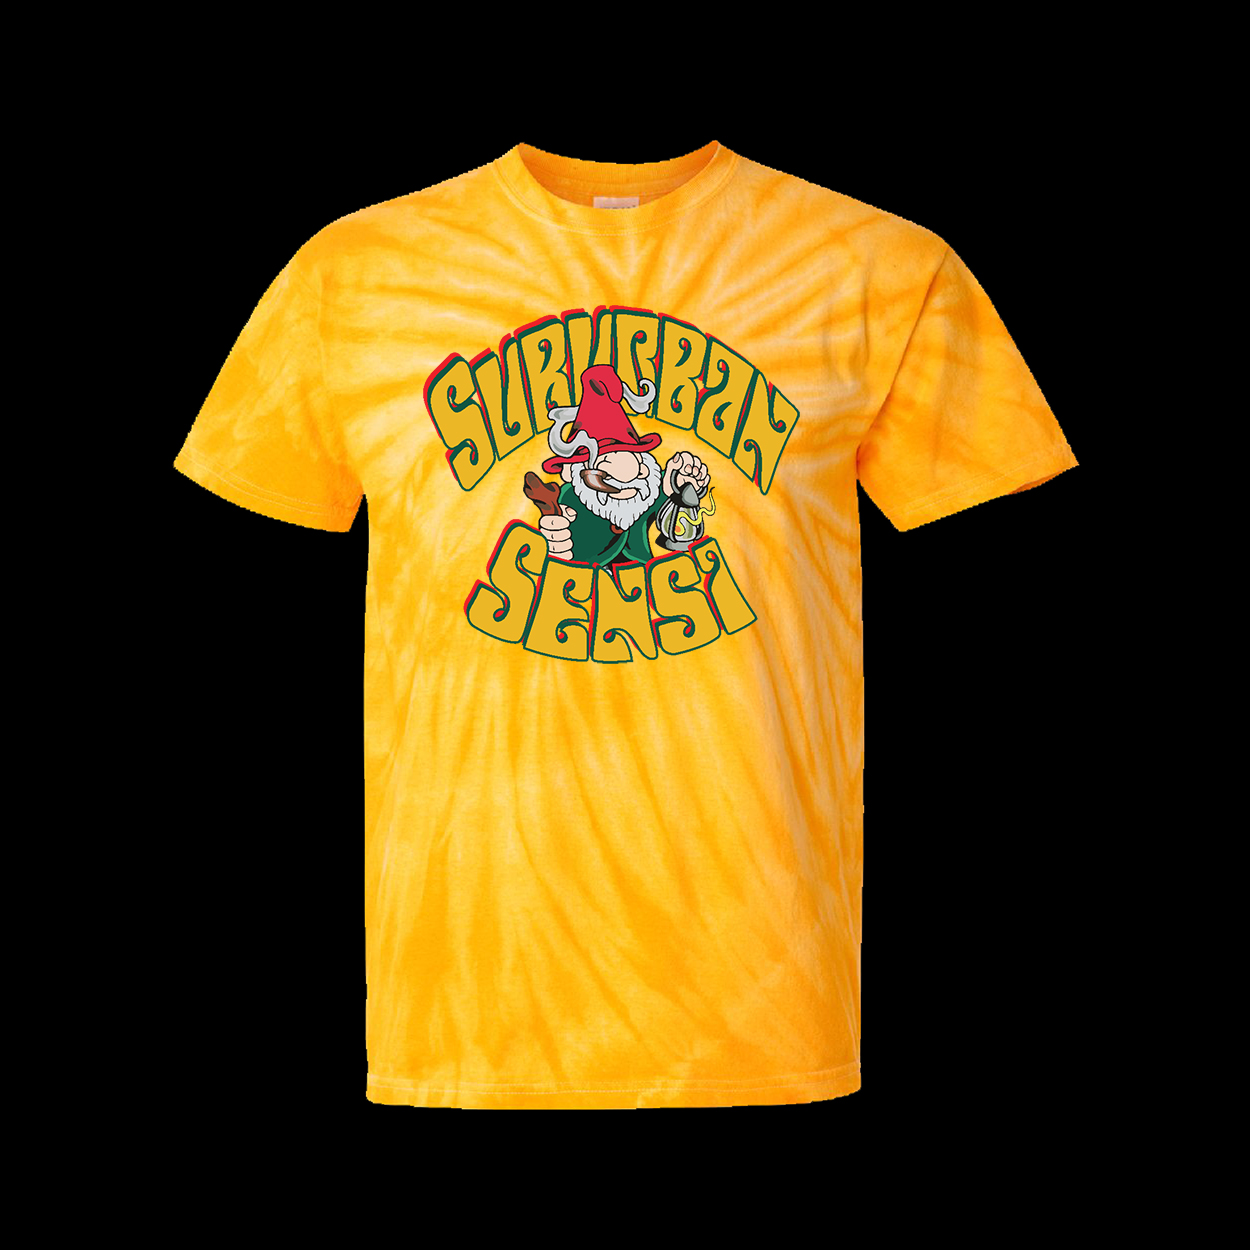 Suburban Sensi Gnome gold tye dye T-shirt